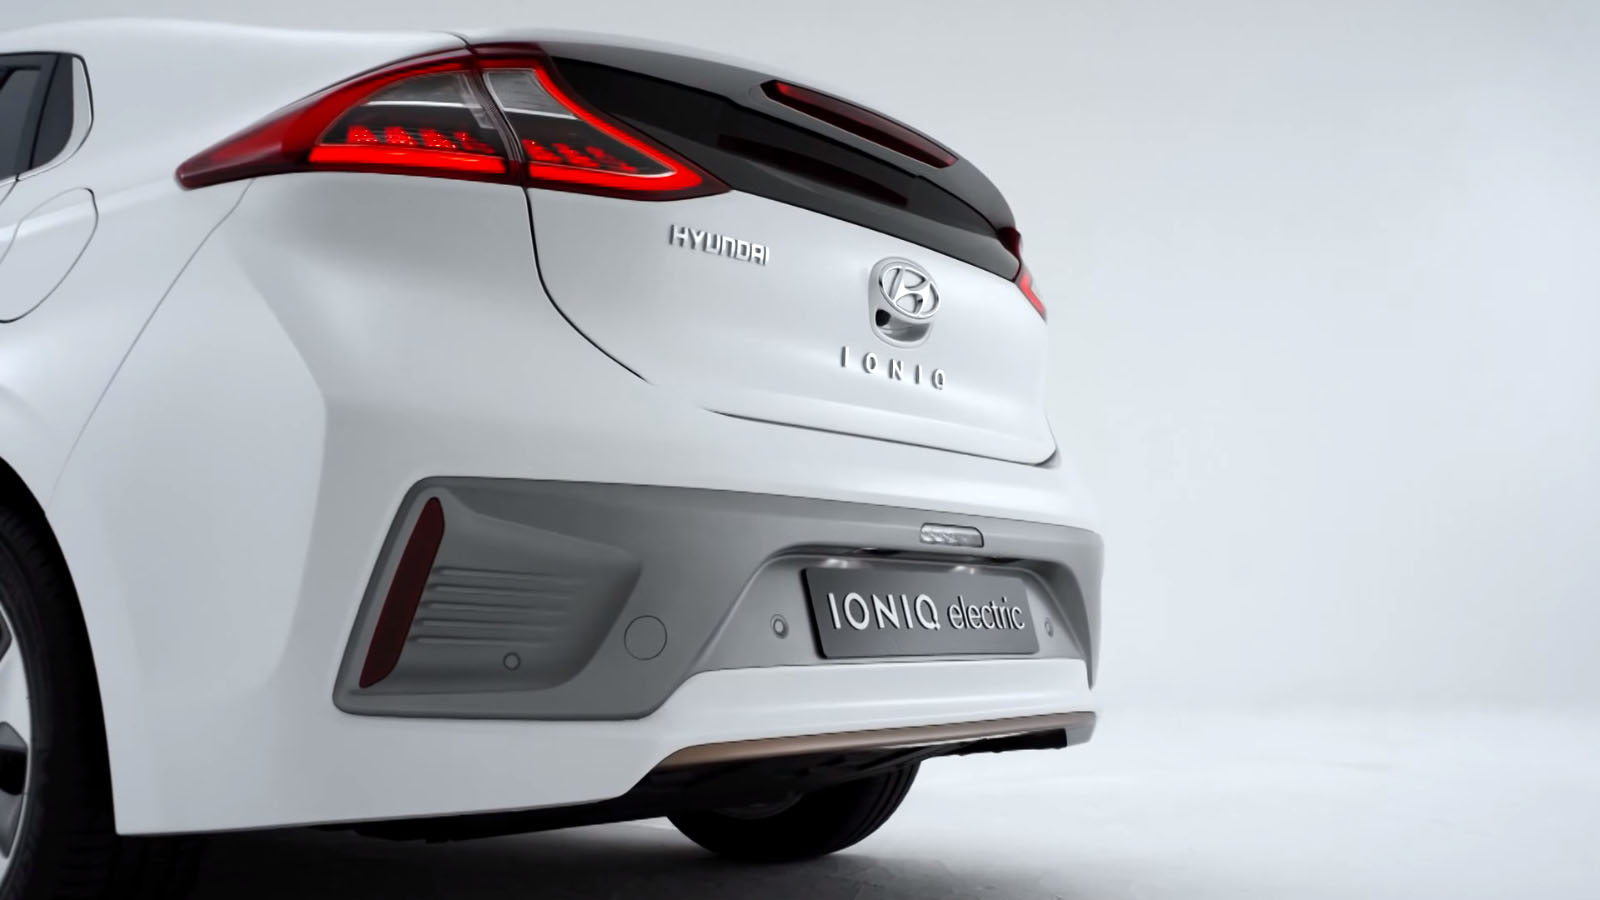 Hyundai Ioniq Electric Plug in Hybrid rear view